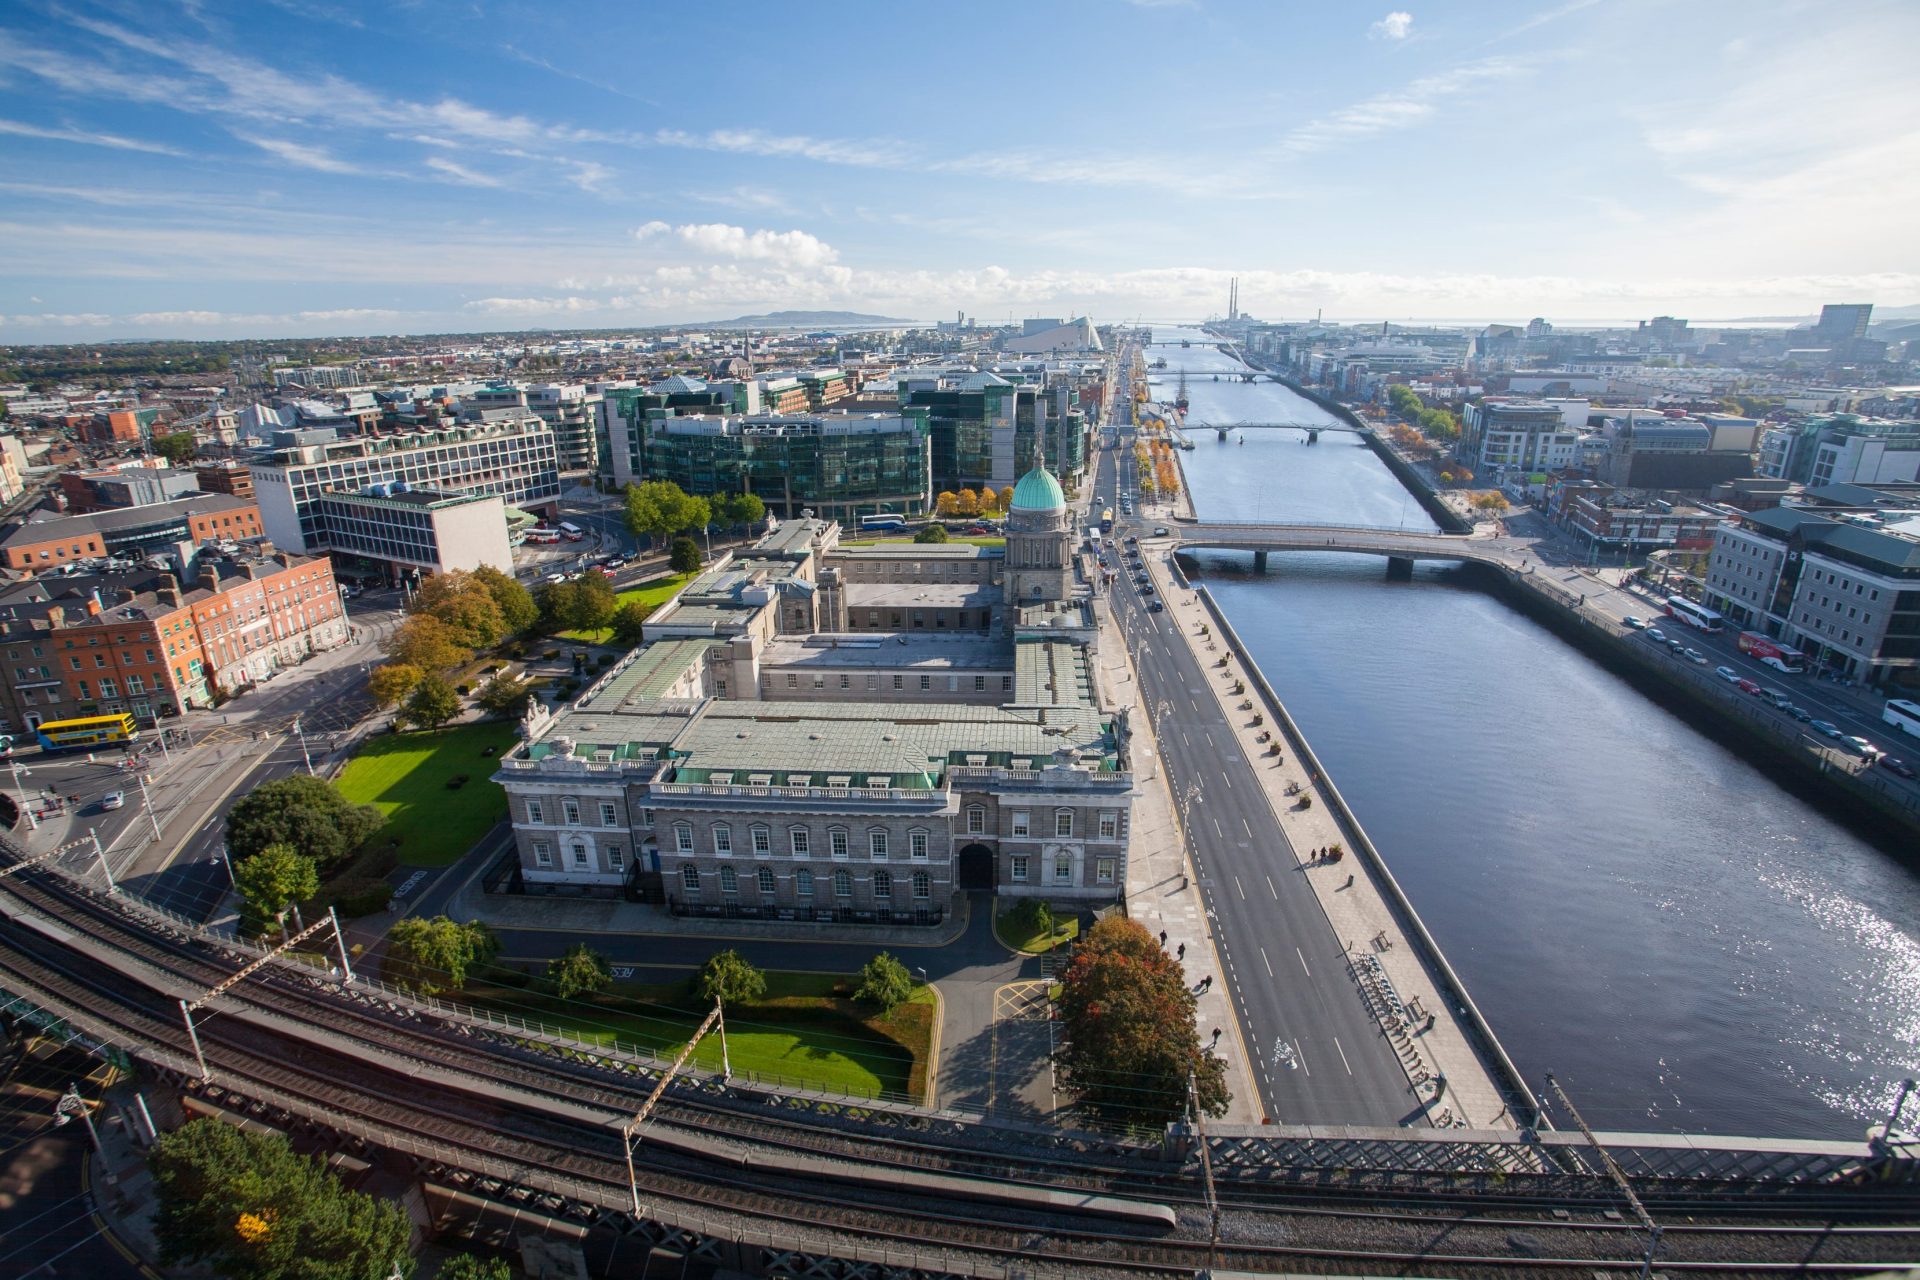 Từ năm 2012 Chính phủ Ireland đã công bố chương trình đầu tư định cư Ireland dành cho các doanh nghiệp và nhà đầu tư. Mở ra cơ hội cho nhà đầu tư và cả gia đình có thể đầu tư định cư Ireland với thủ tục đơn giản, thời gian thực hiện nhanh và ít rủi ro.